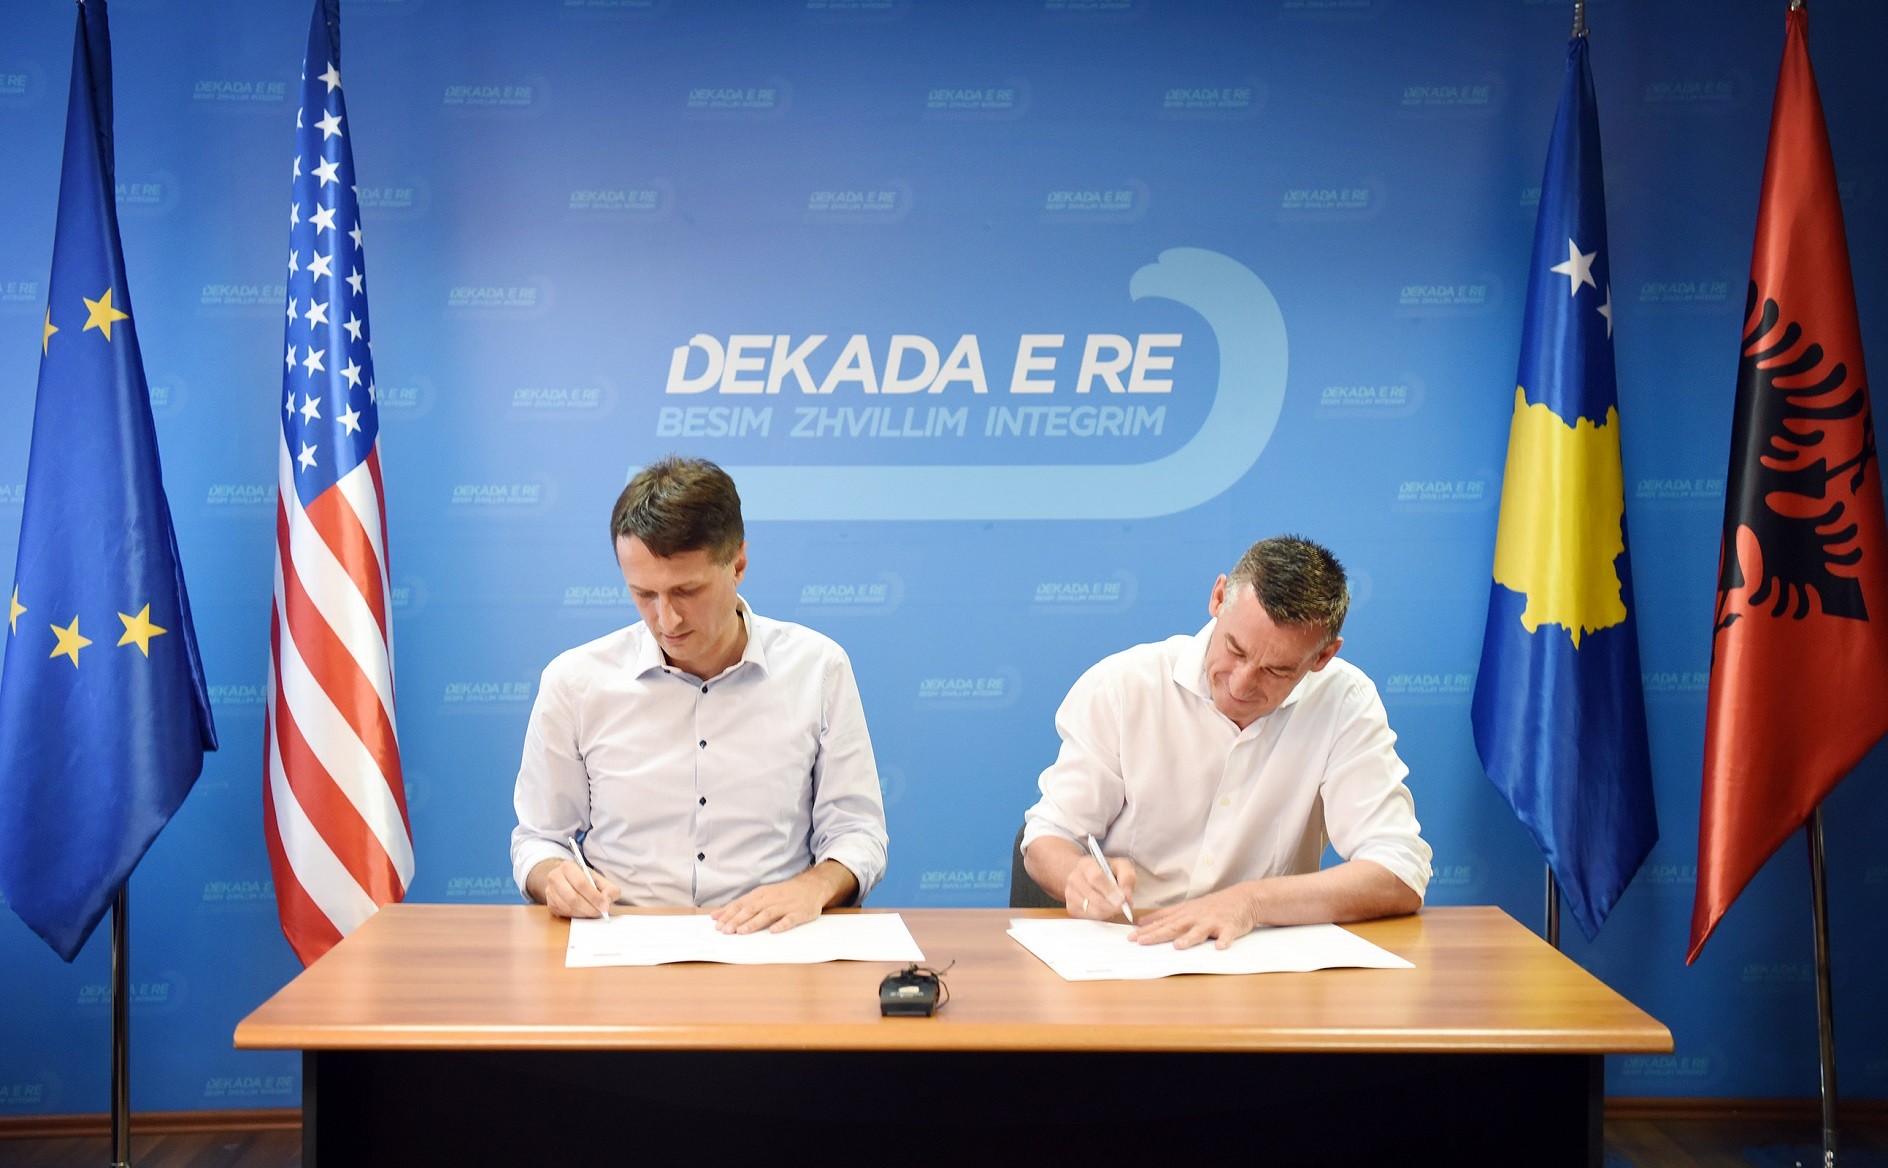 PDK dhe LB nënshkruajnë marrëveshje koalicioni    